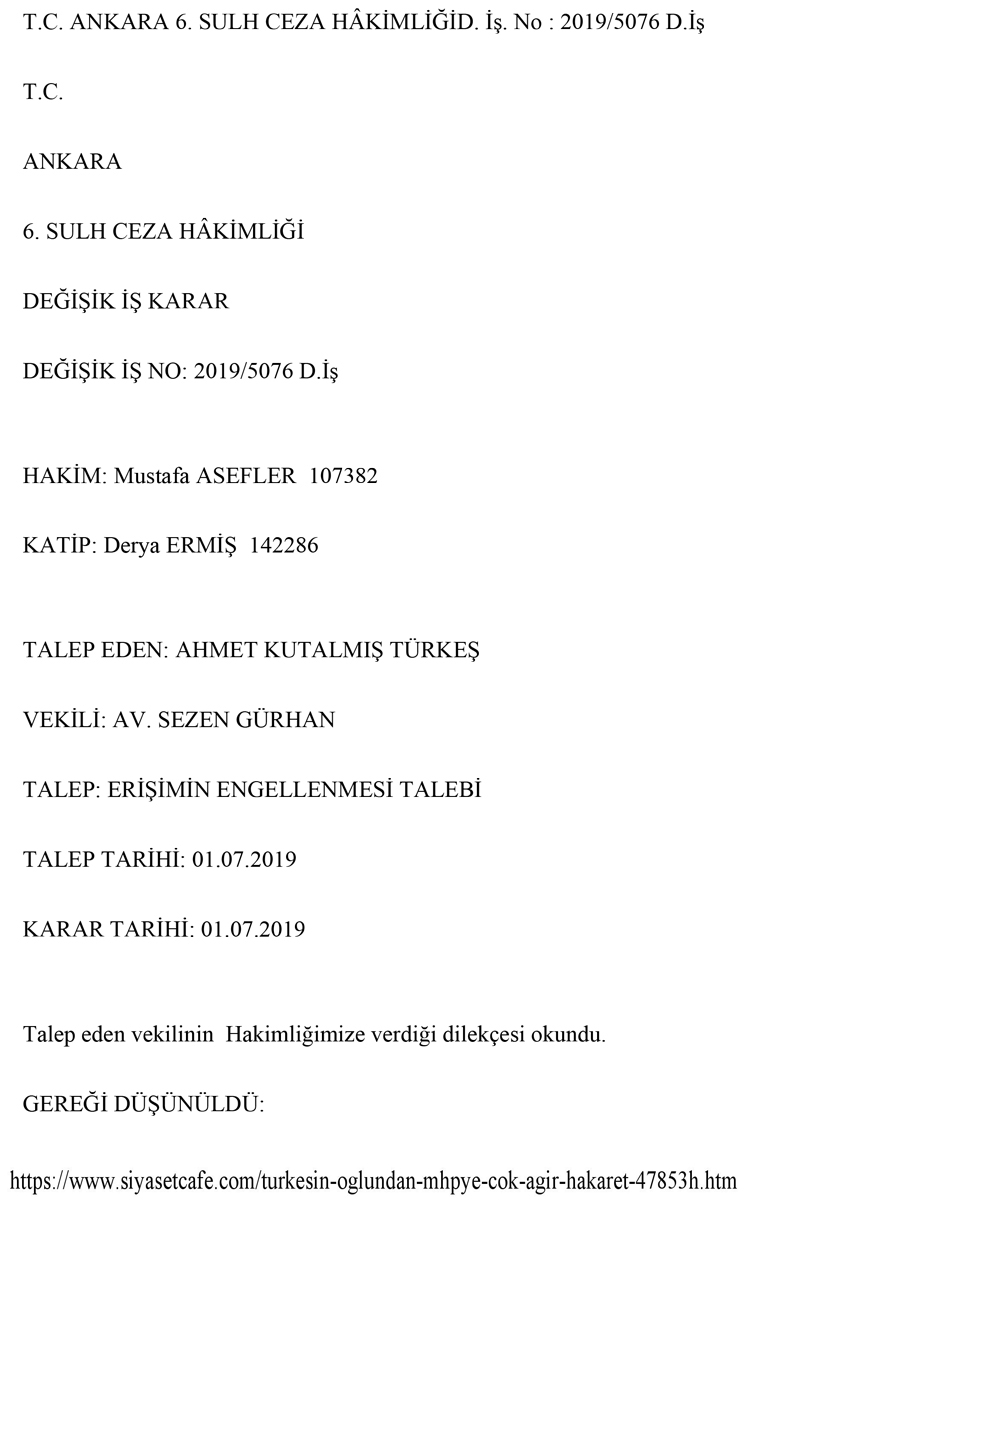 turkes-mahkeme-karari-sayfa2.jpg